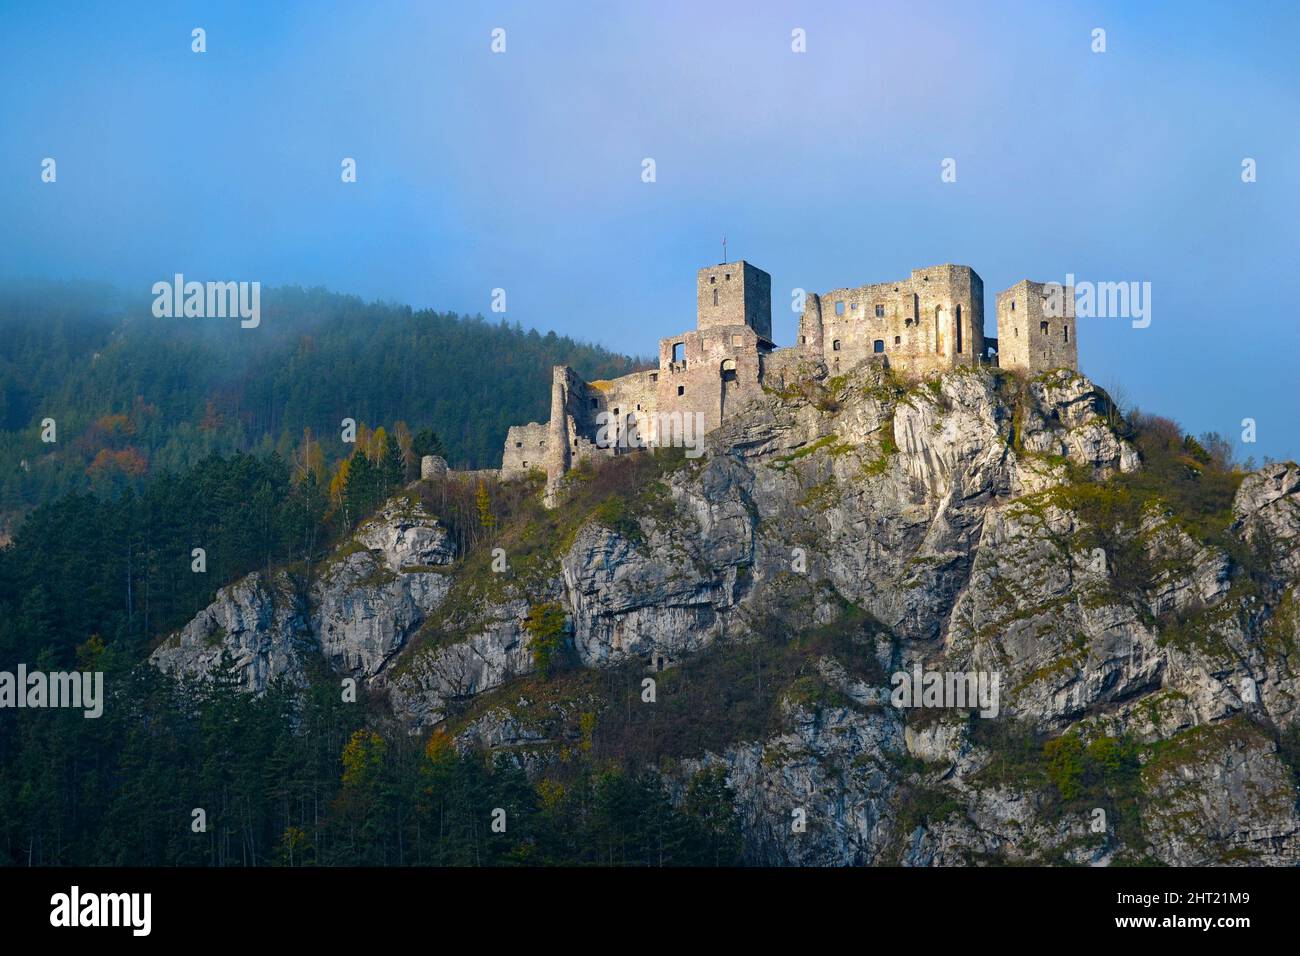 Les ruines du château historique de Strecno en Slovaquie. Château sur un rocher au-dessus de la rivière dans un matin brumeux. Europe. Banque D'Images